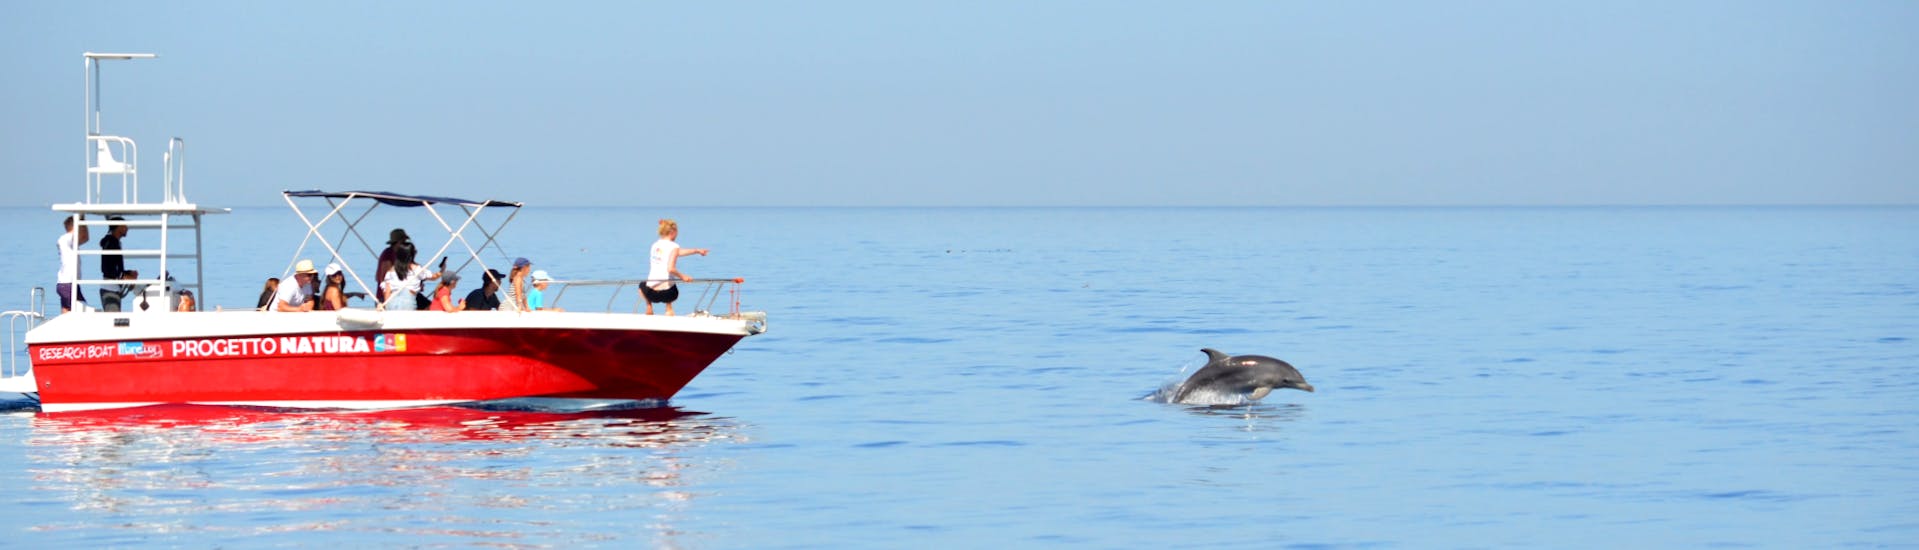 Delfinbeobachtung mit Schnorcheln in Alghero.